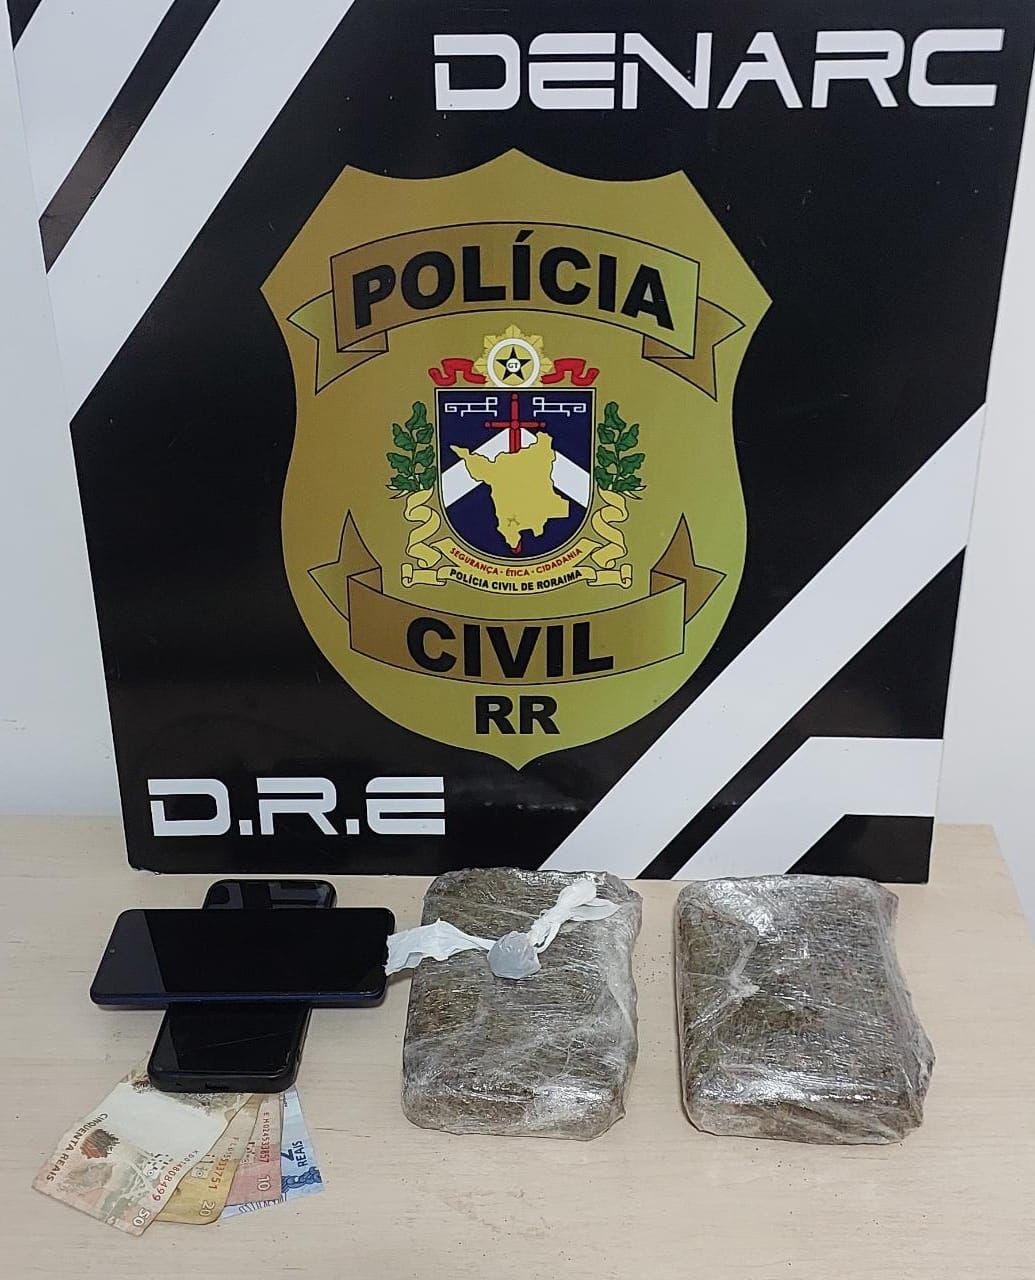 Polícia apreendeu droga (skunk), dinheiro e telefones - Foto: Divulgação/PCRR